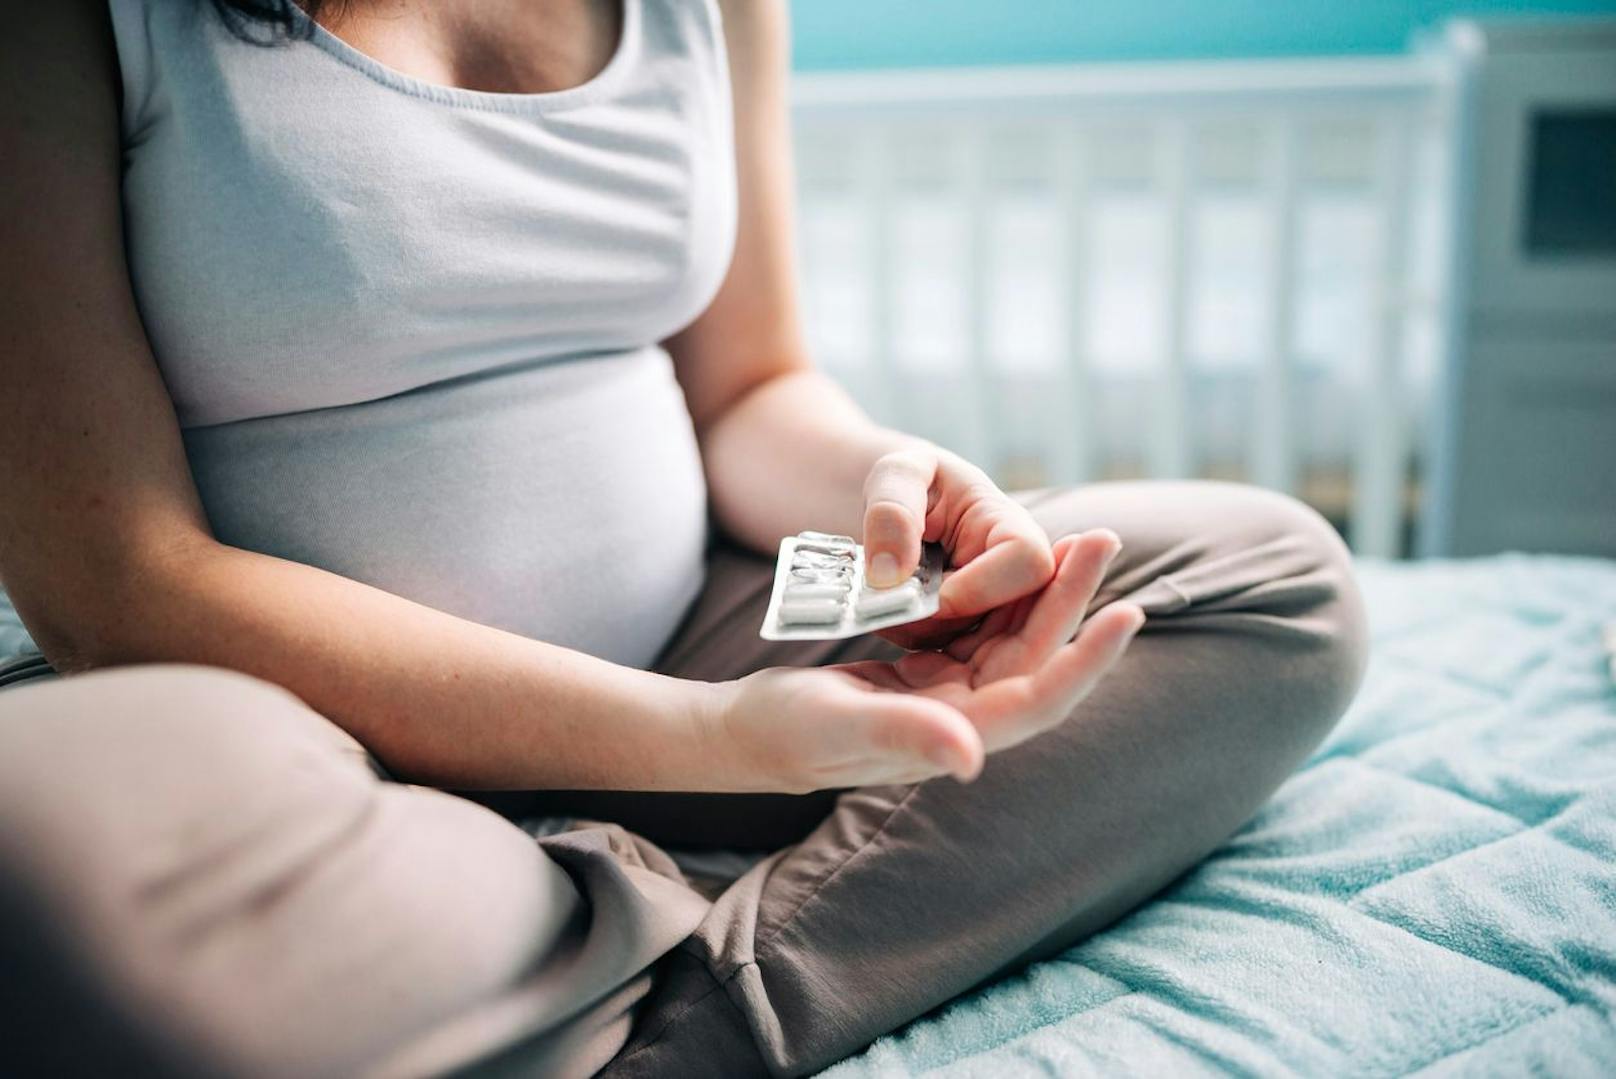 Schwangere dürfen nicht jedes Medikament einnehmen, da es Nebenwirkungen auf das ungeborene Kind haben kann. Daher immer Rücksprache mit dem Arzt halten.